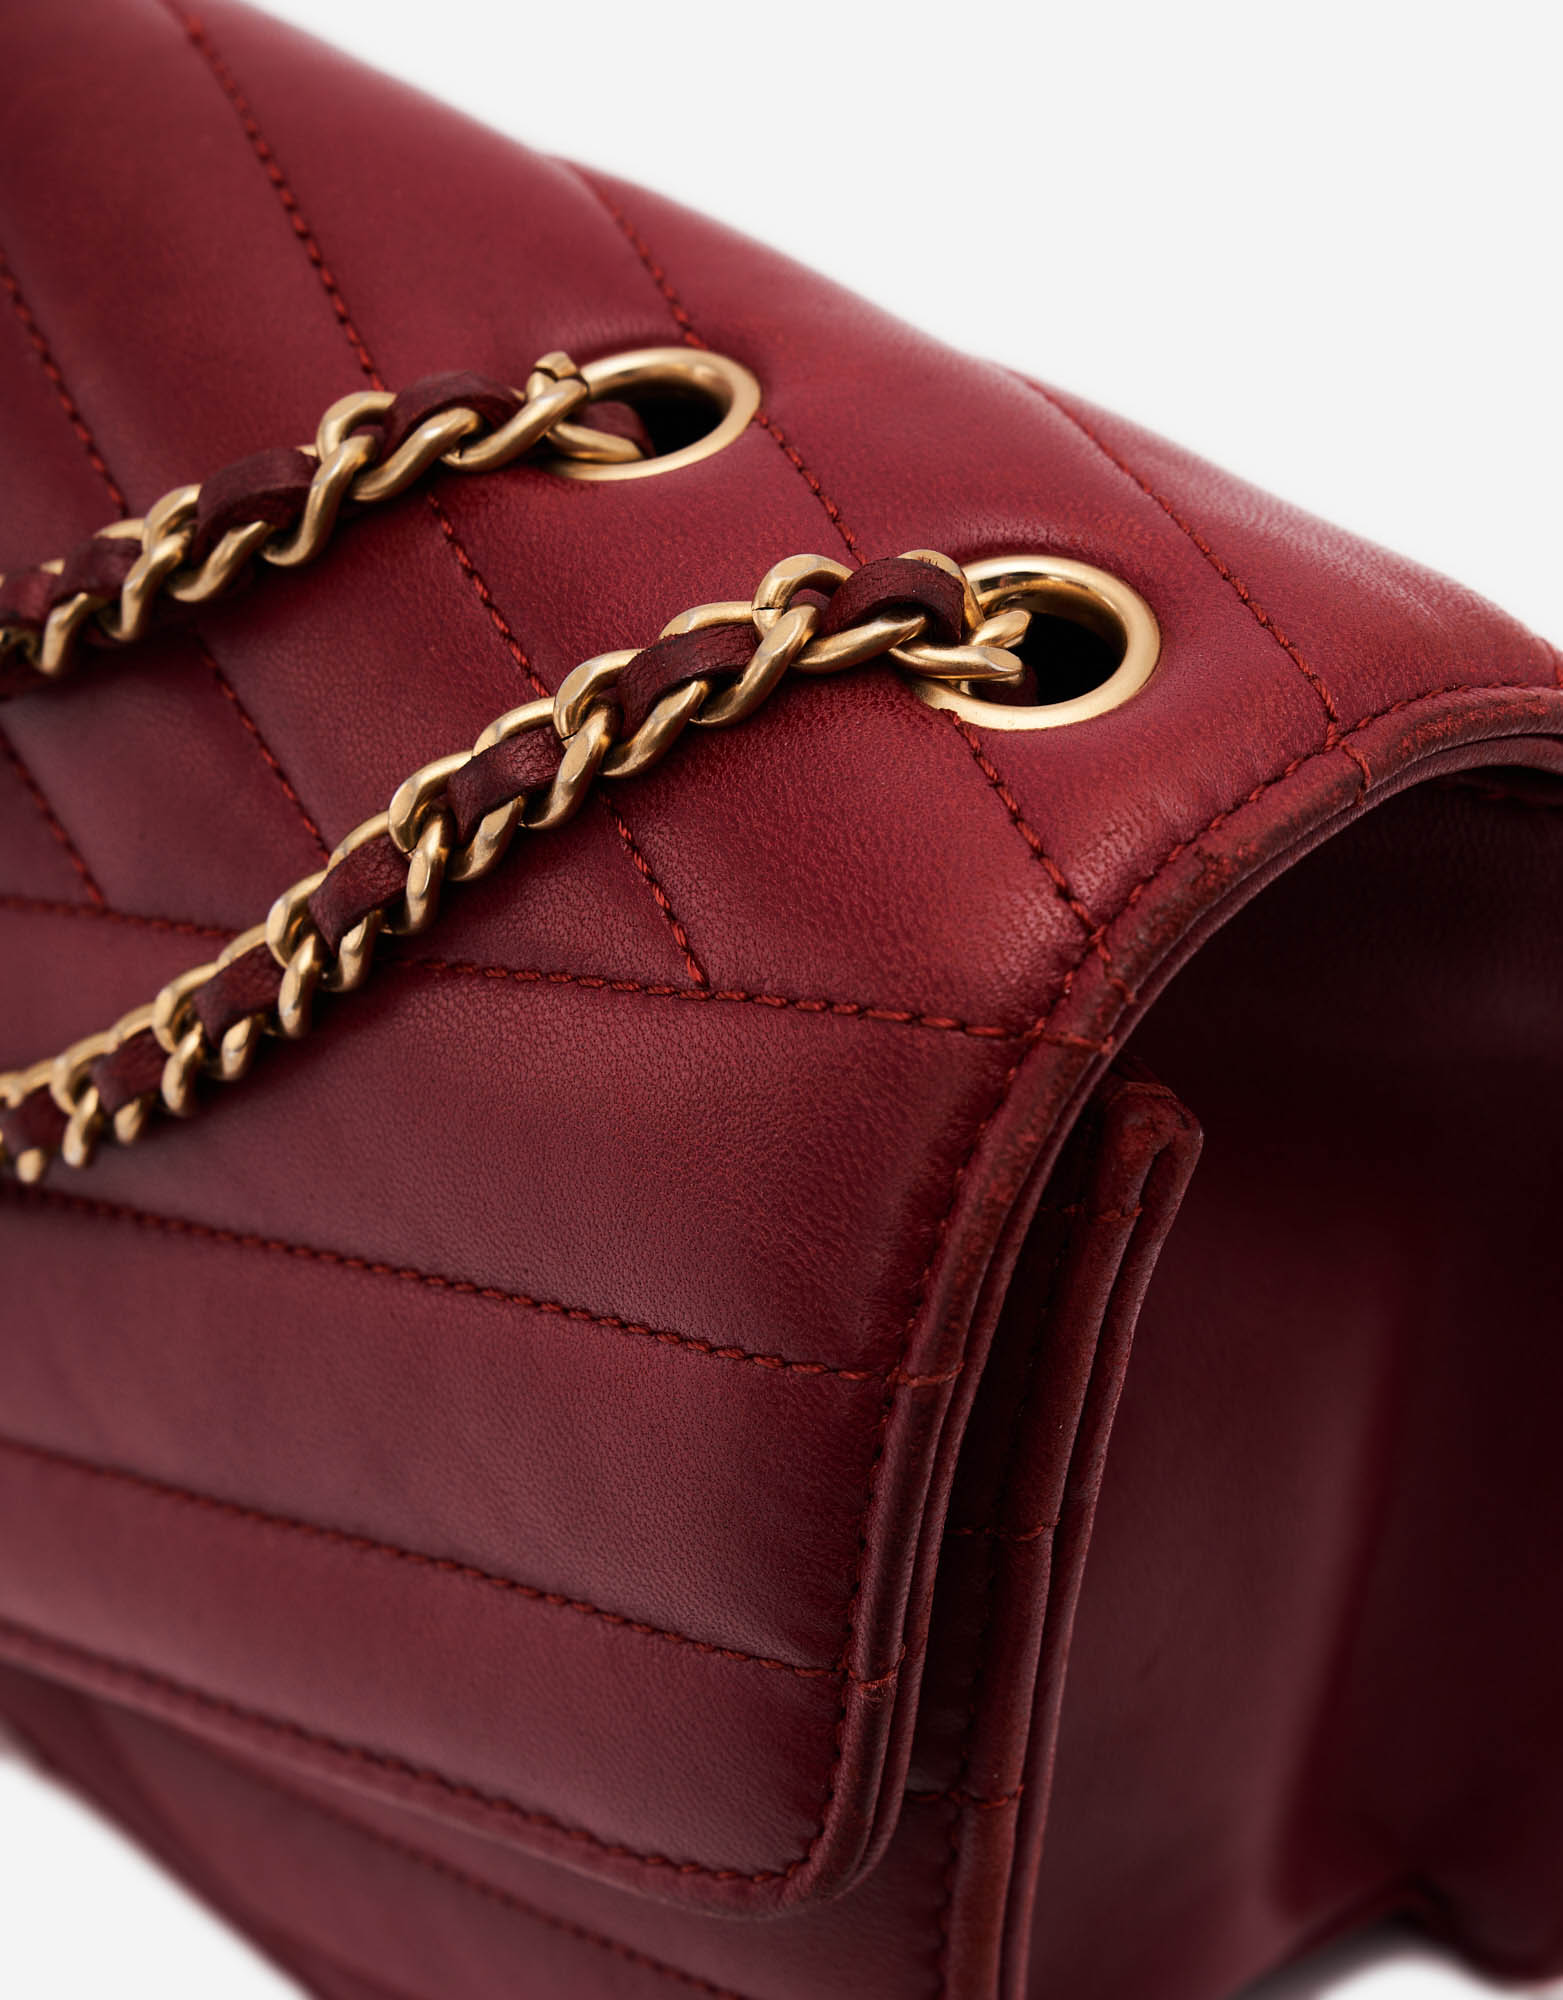 Chanel Bordeaux Leather Gabrielle Bag